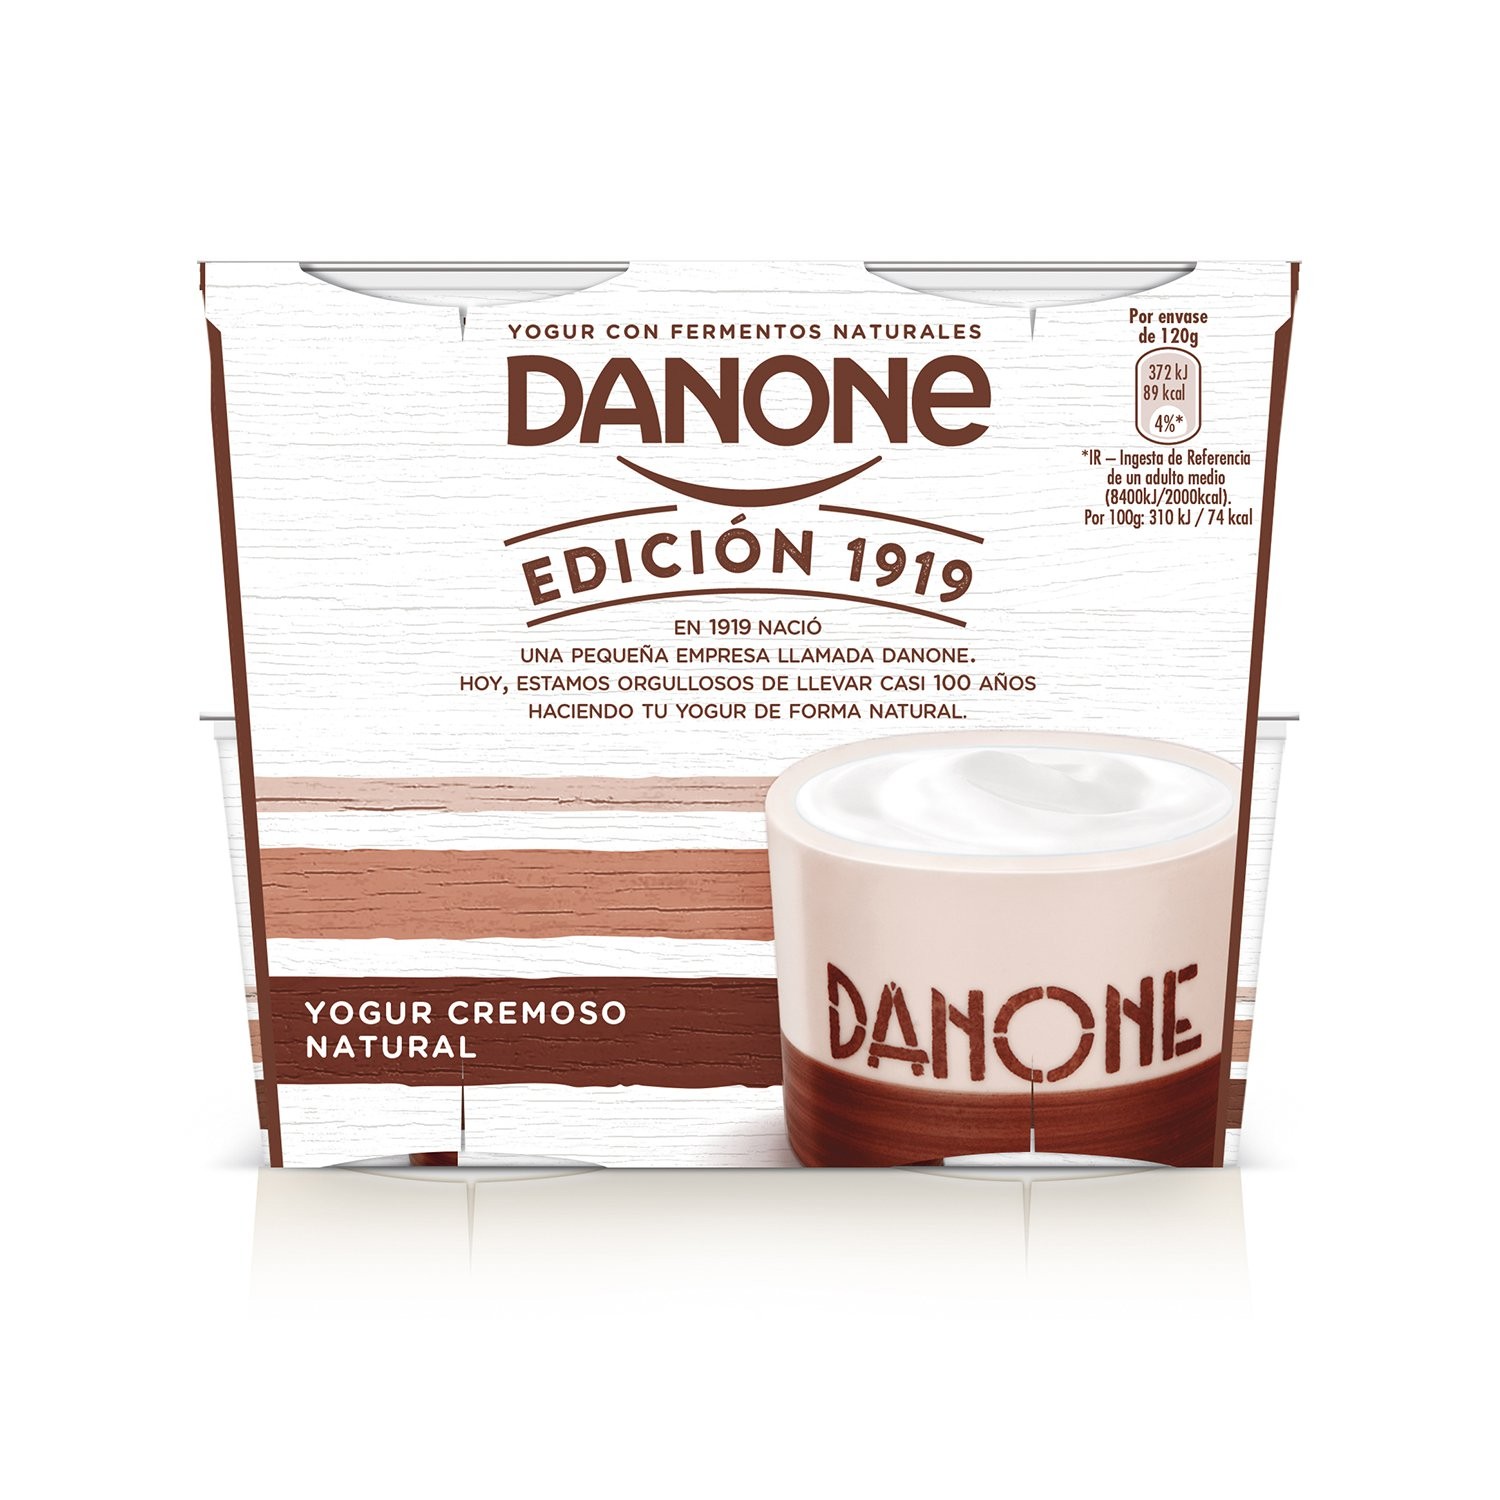 Natural x 4 - Danone